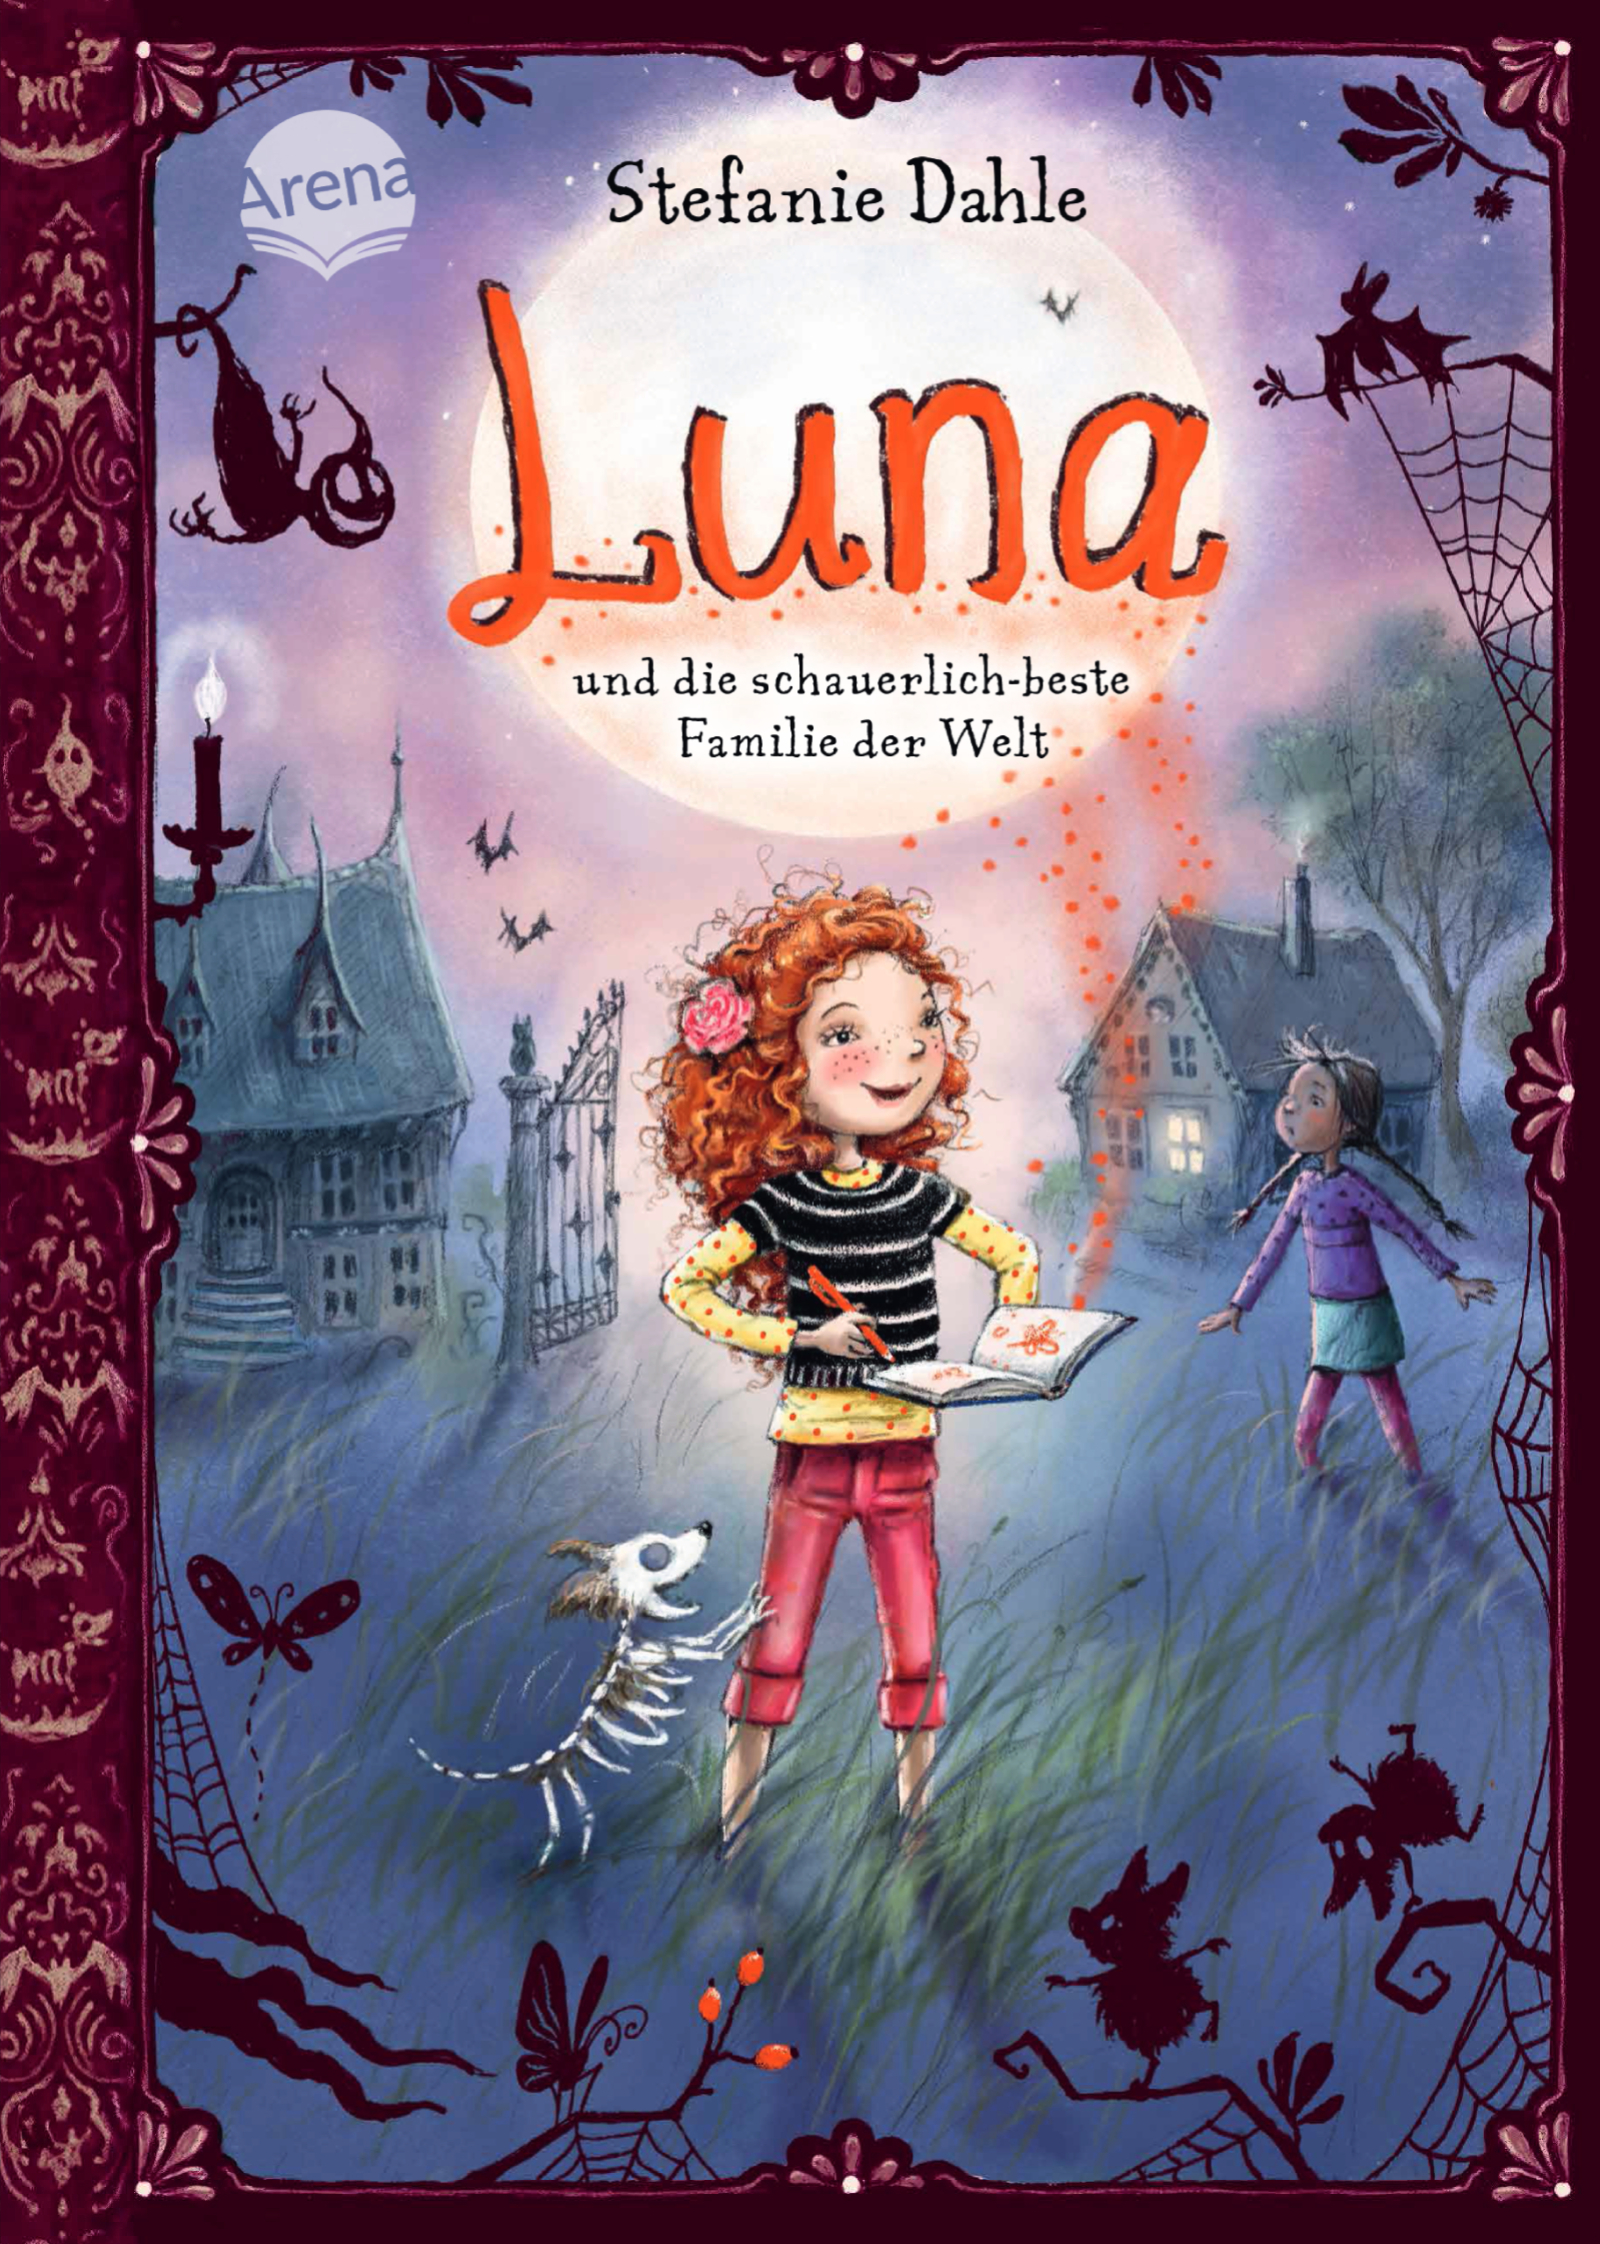 Buchcover "Luna und die schauerlich-beste Failie der Welt", Arena 